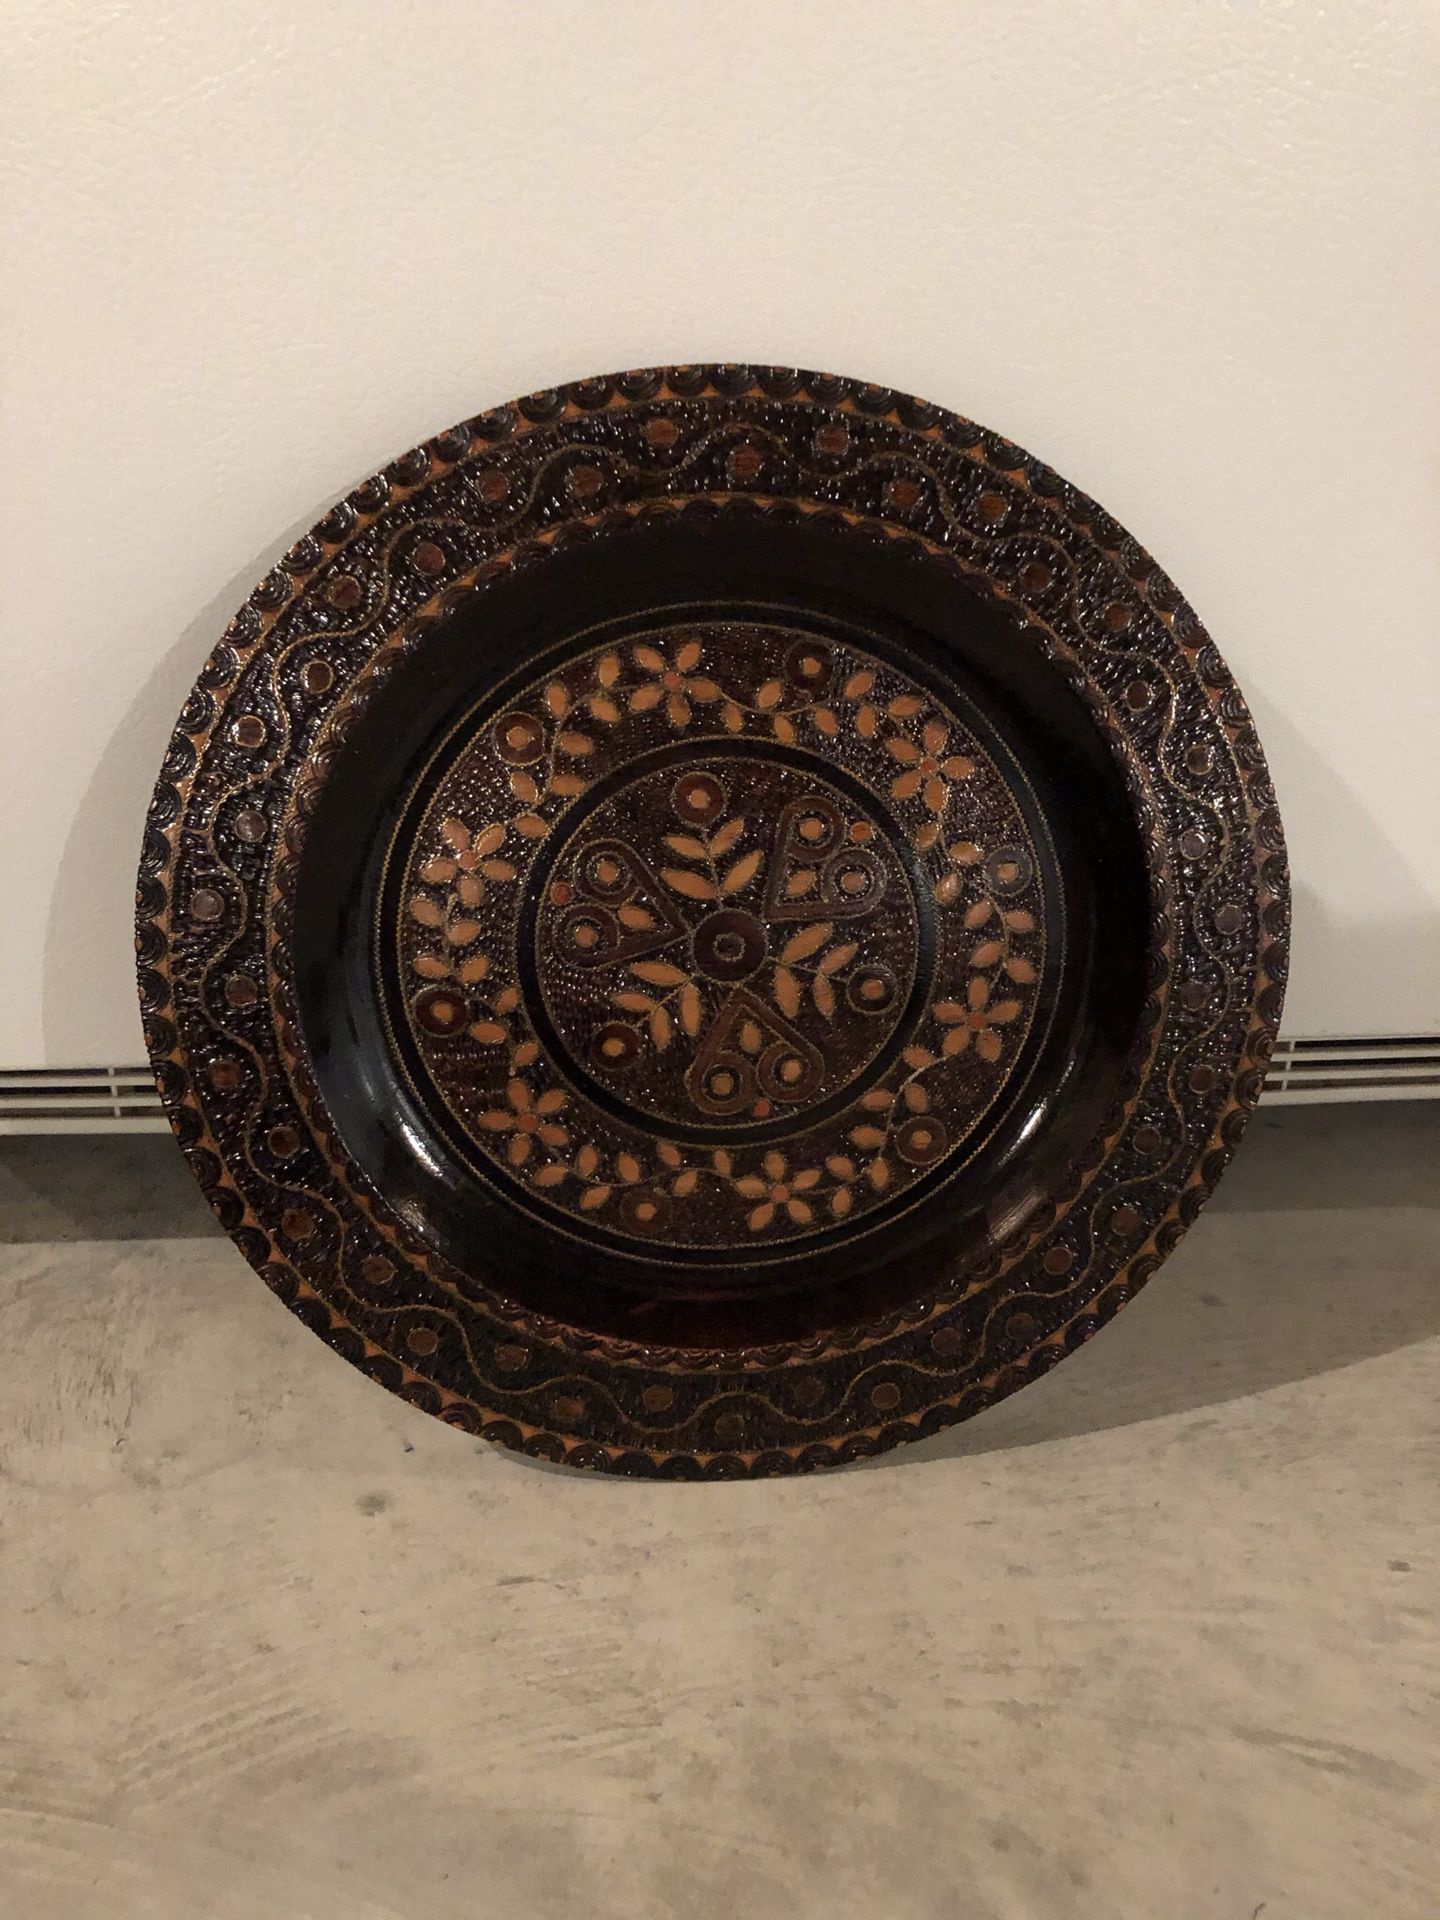 Unique decorative wooden plate